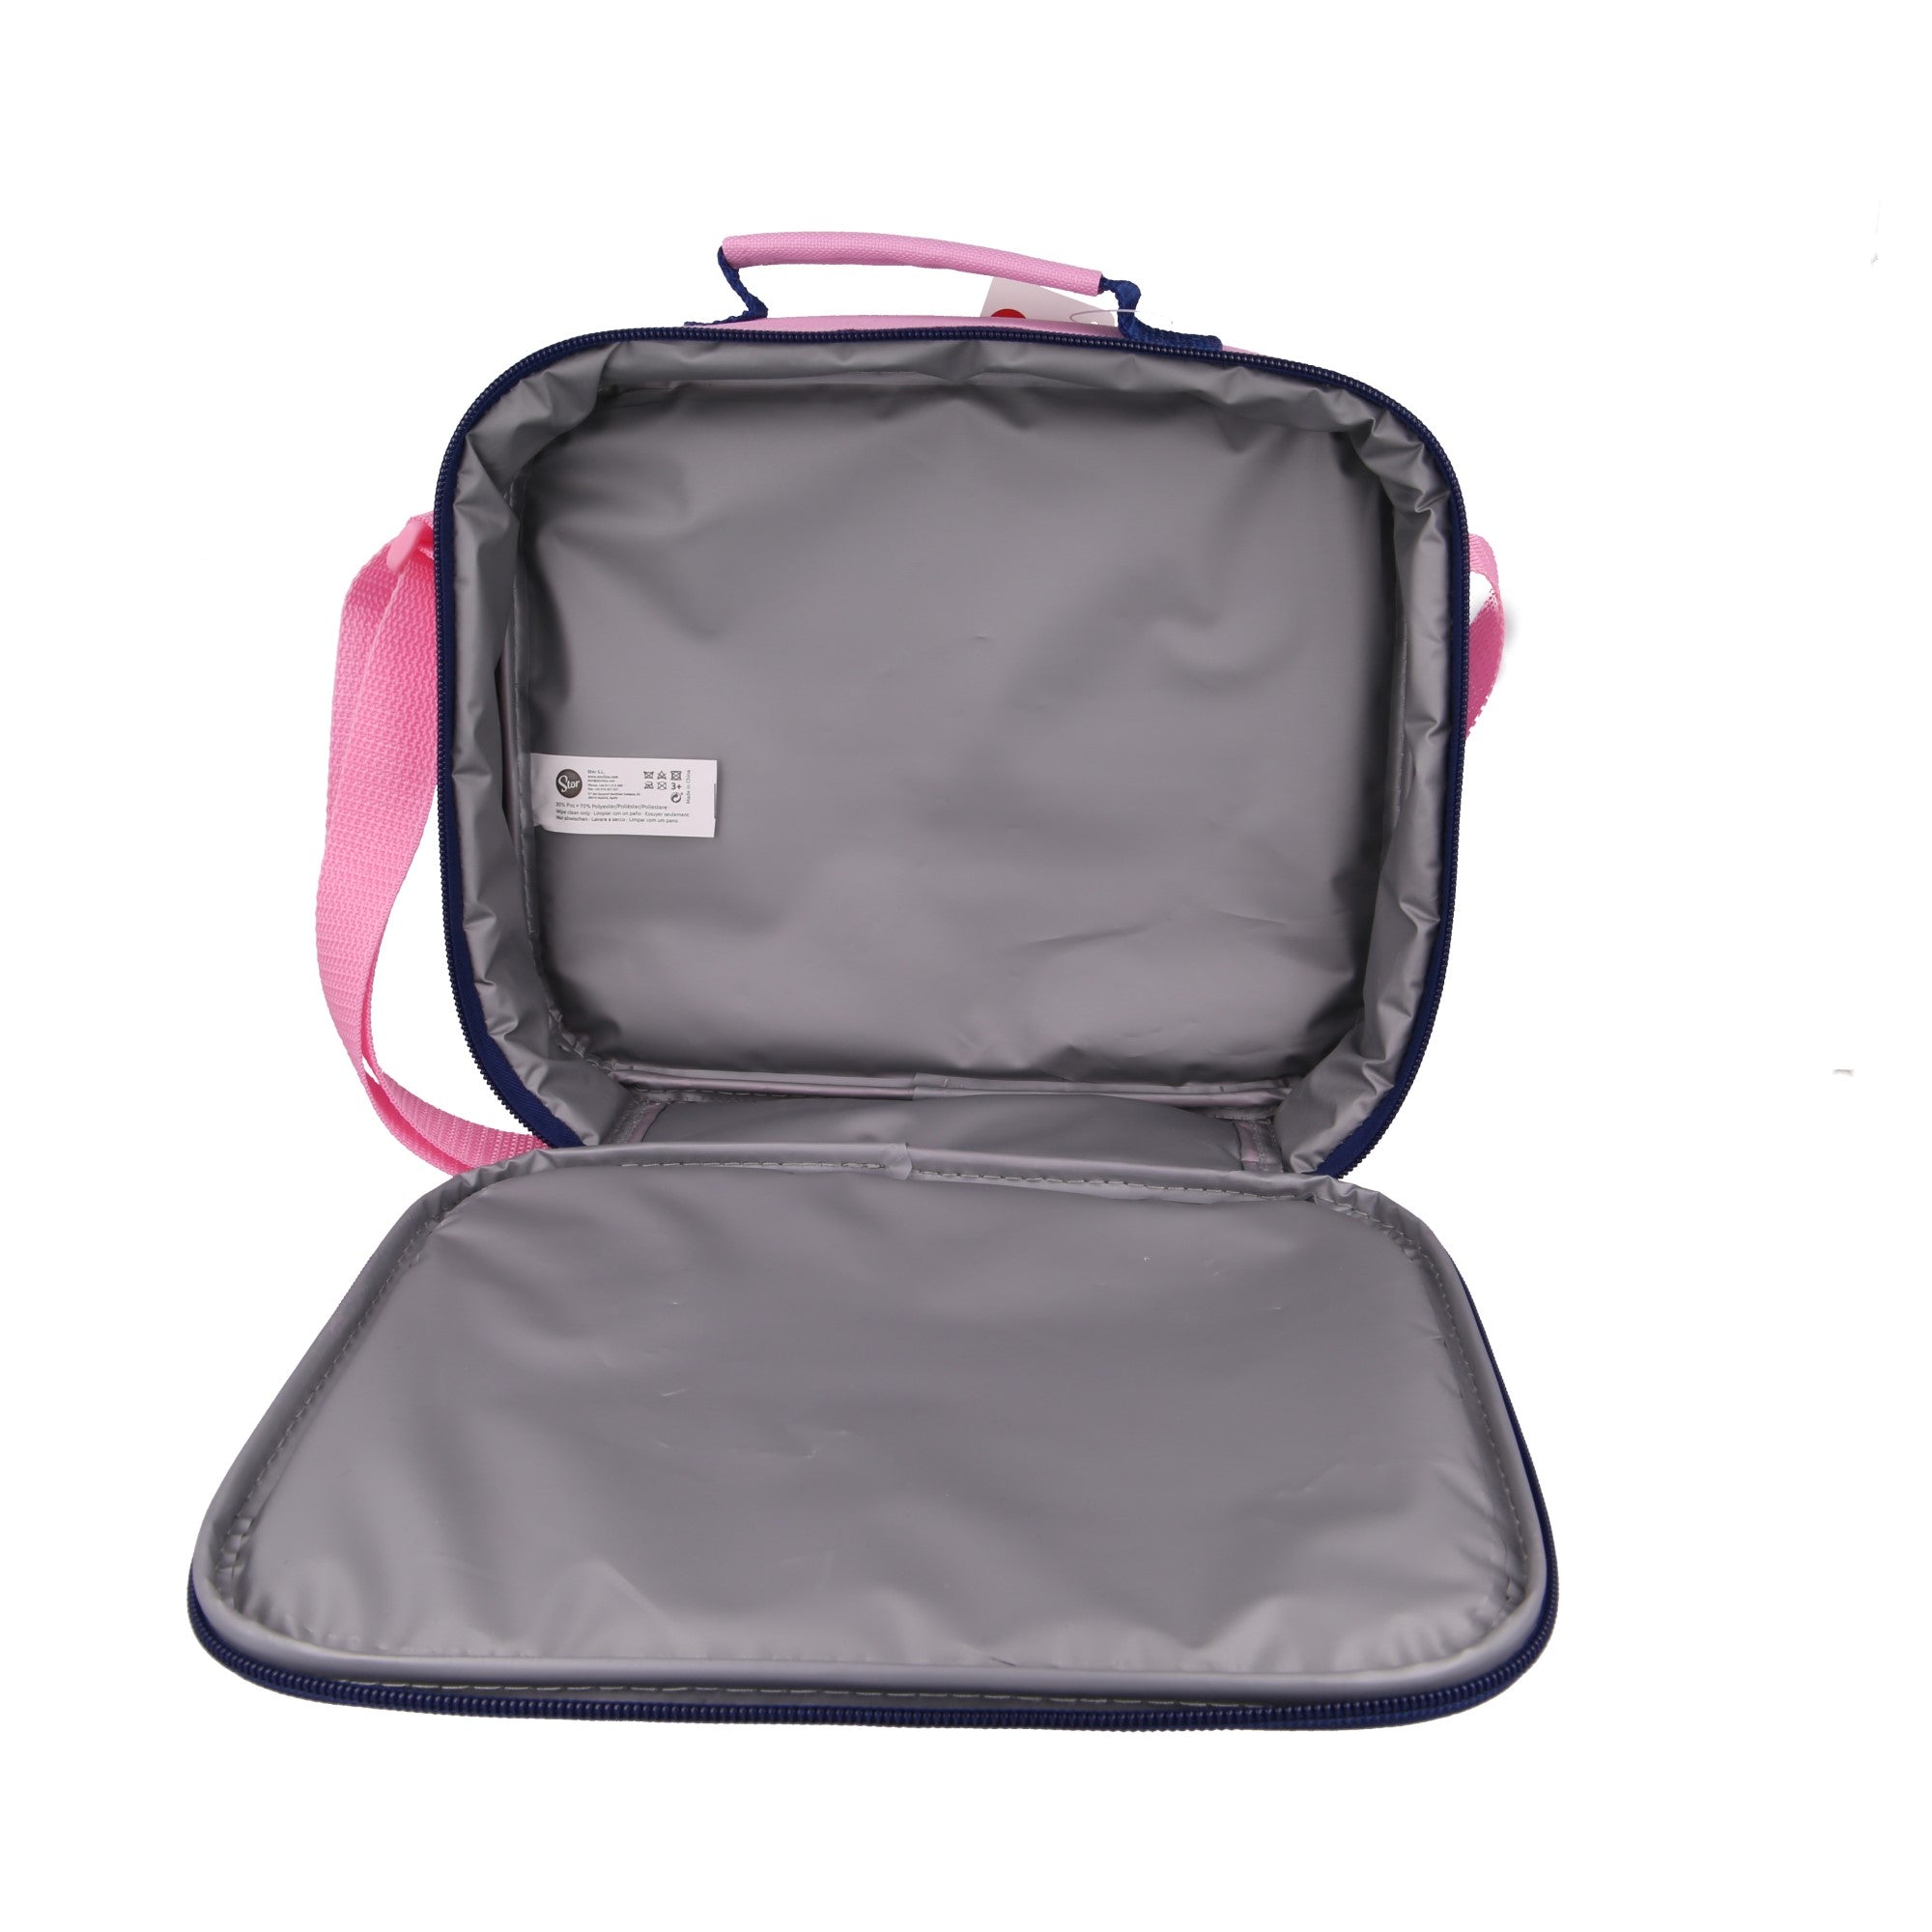 حقيبة مستطيلة معزولة بحزام, بتصميم ميني ماوس من ستور